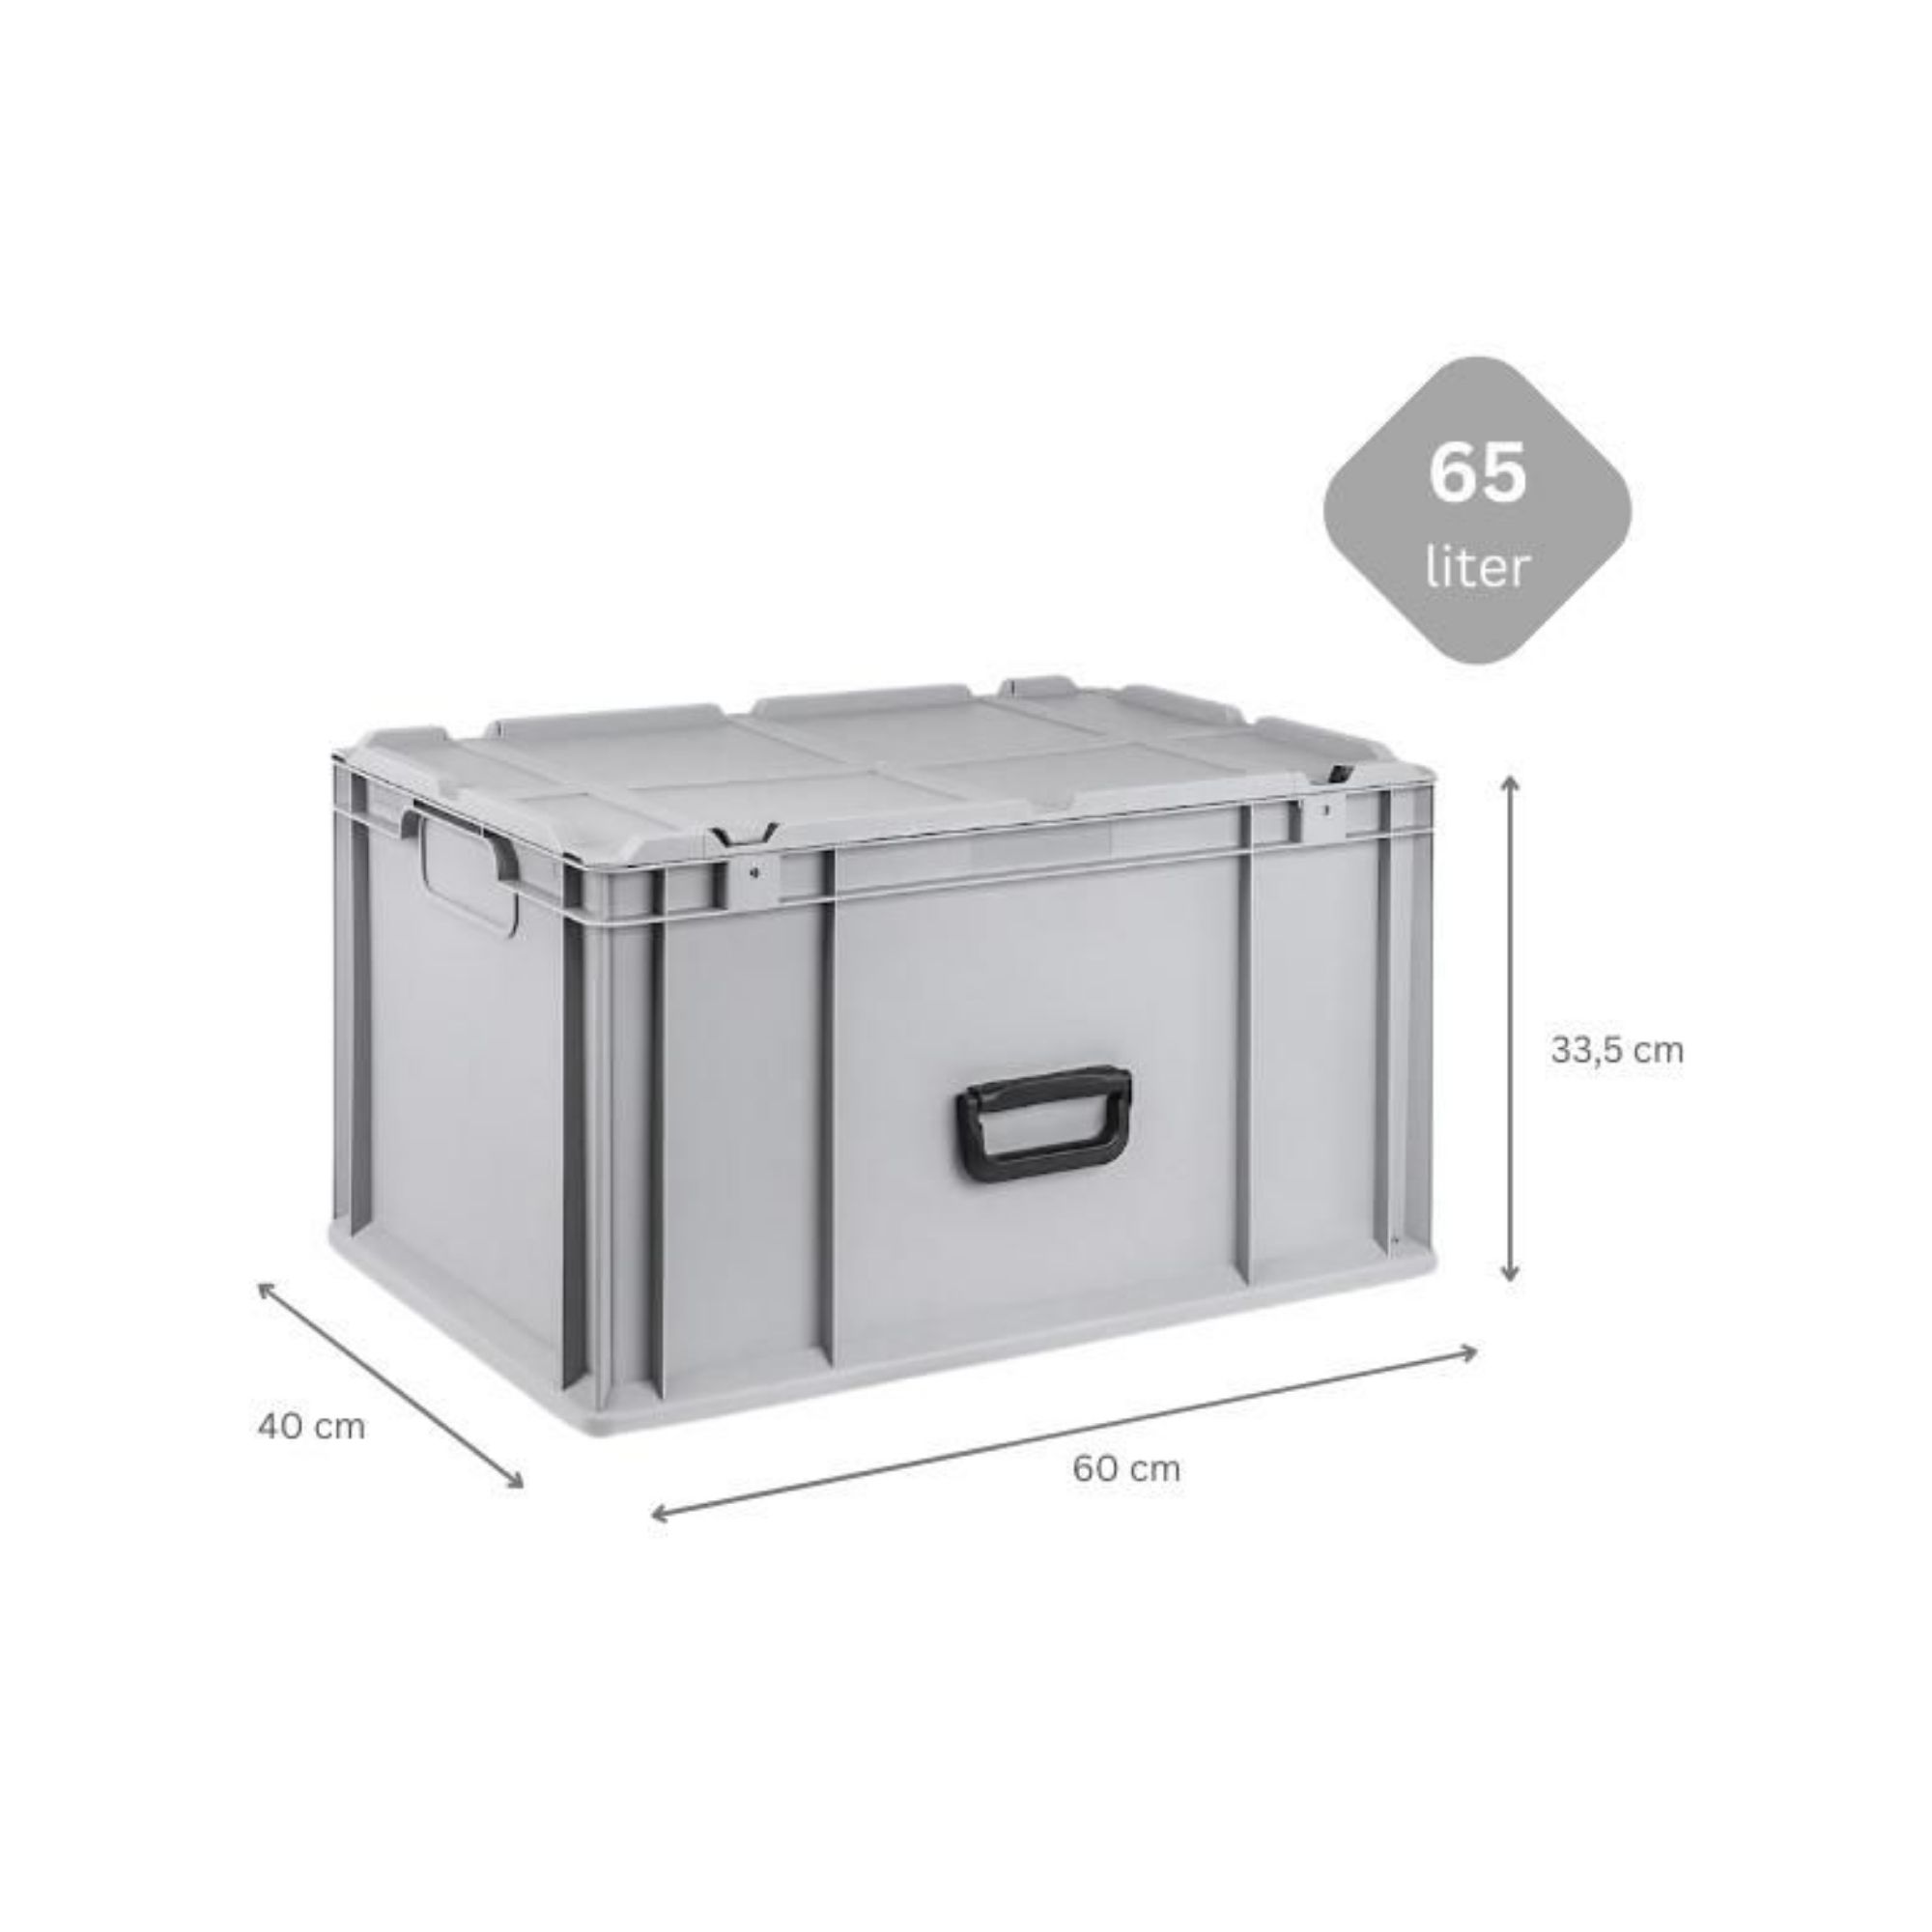 Eurobox NextGen Portable mit Rasterschaumstoff & Schaumstoffeinlage | HxBxT 33,5x40x60cm | 65 Liter | Eurobehälter, Transportbox, Transportbehälter, Stapelbehälter